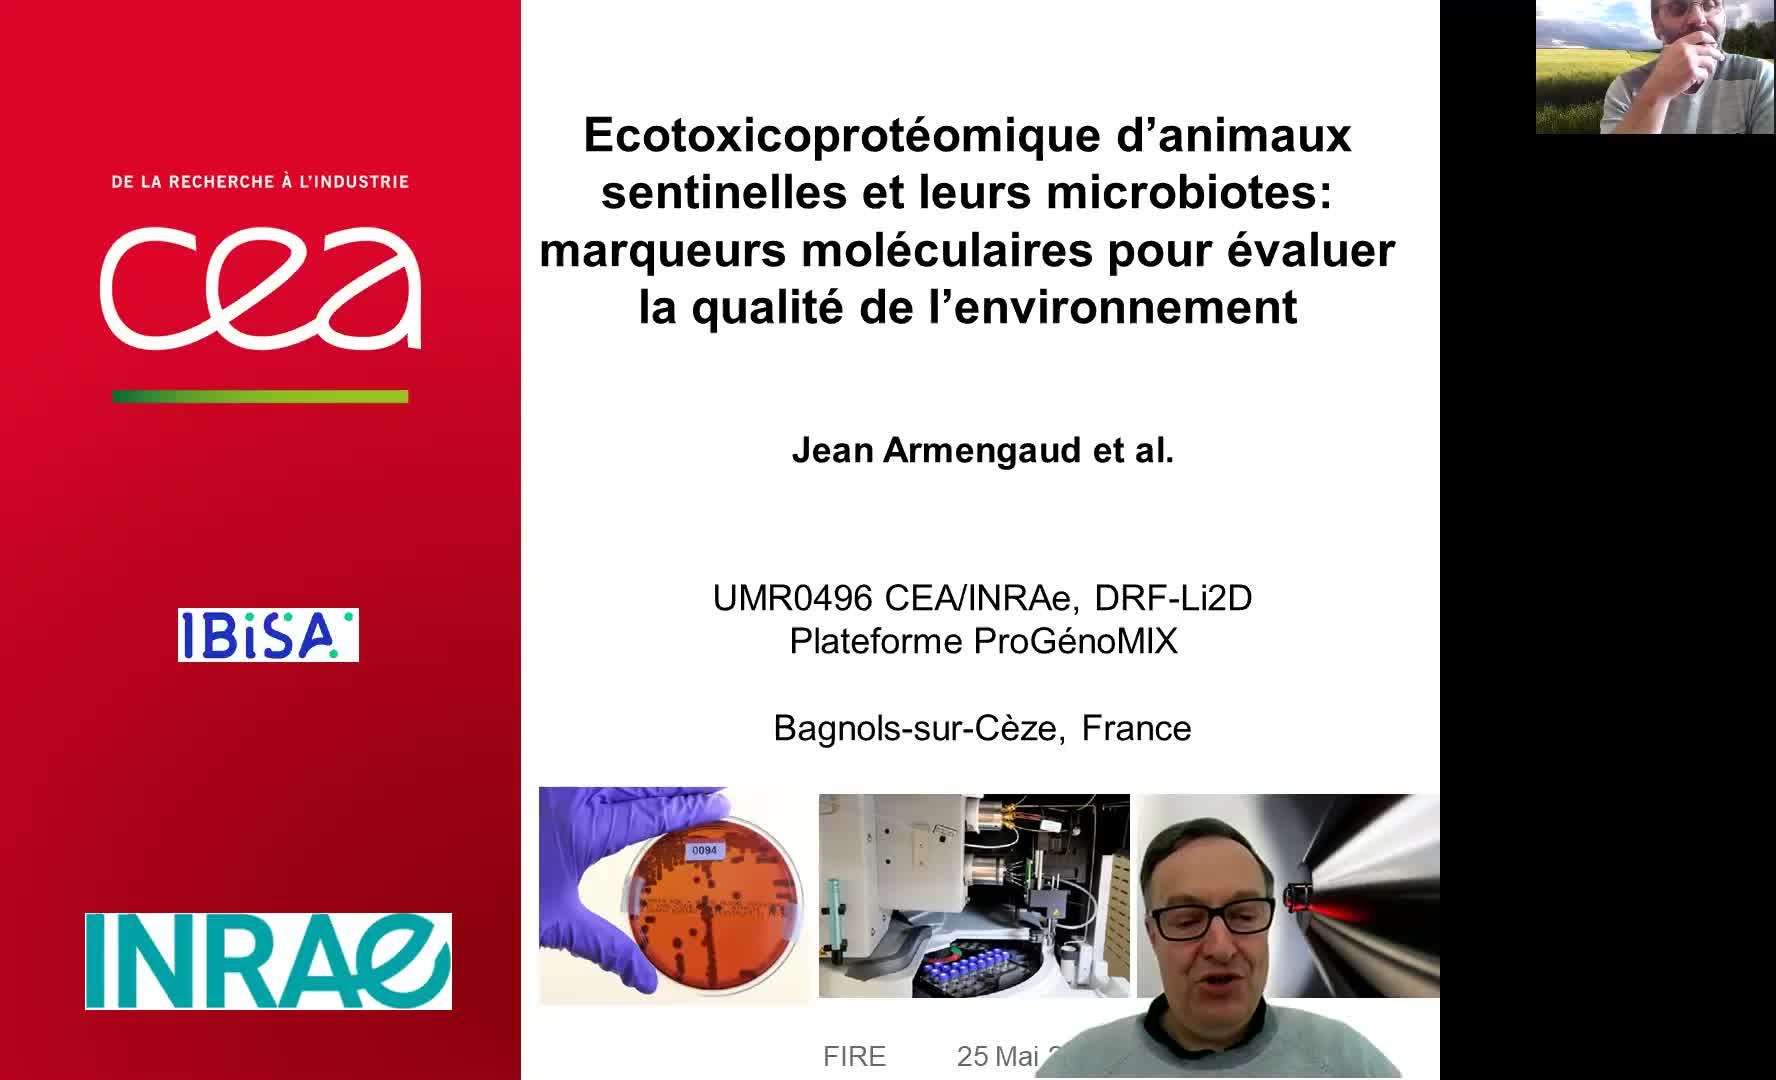 Jean Armengaud : Ecotoxicoprotéomique d’animaux sentinelles et leurs microbiotes: marqueurs moléculaires pour évaluer la qualité de l’environnement